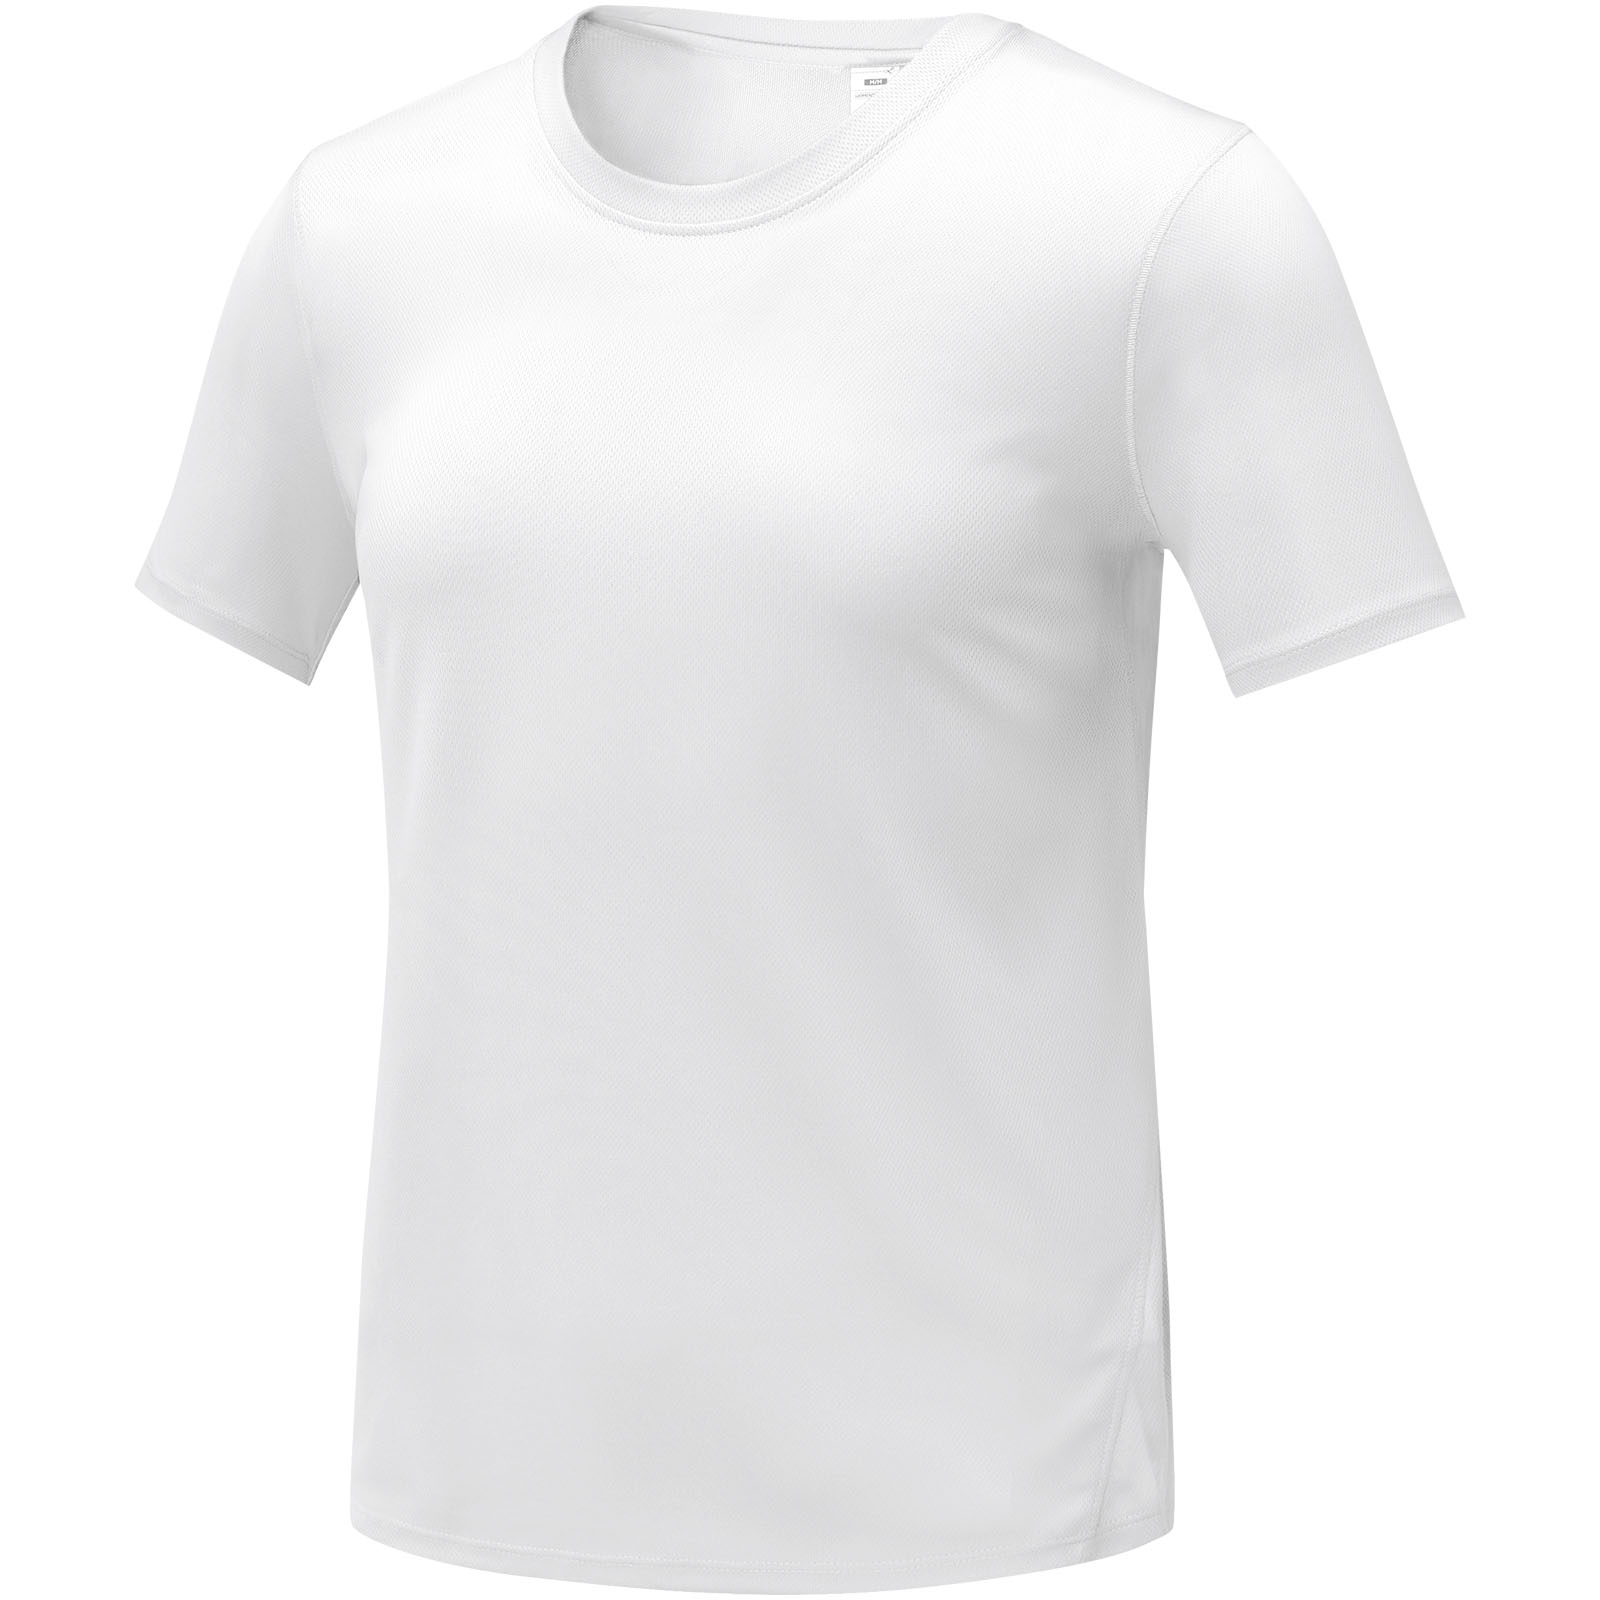 T-shirts - Kratos short sleeve women's cool fit t-shirt